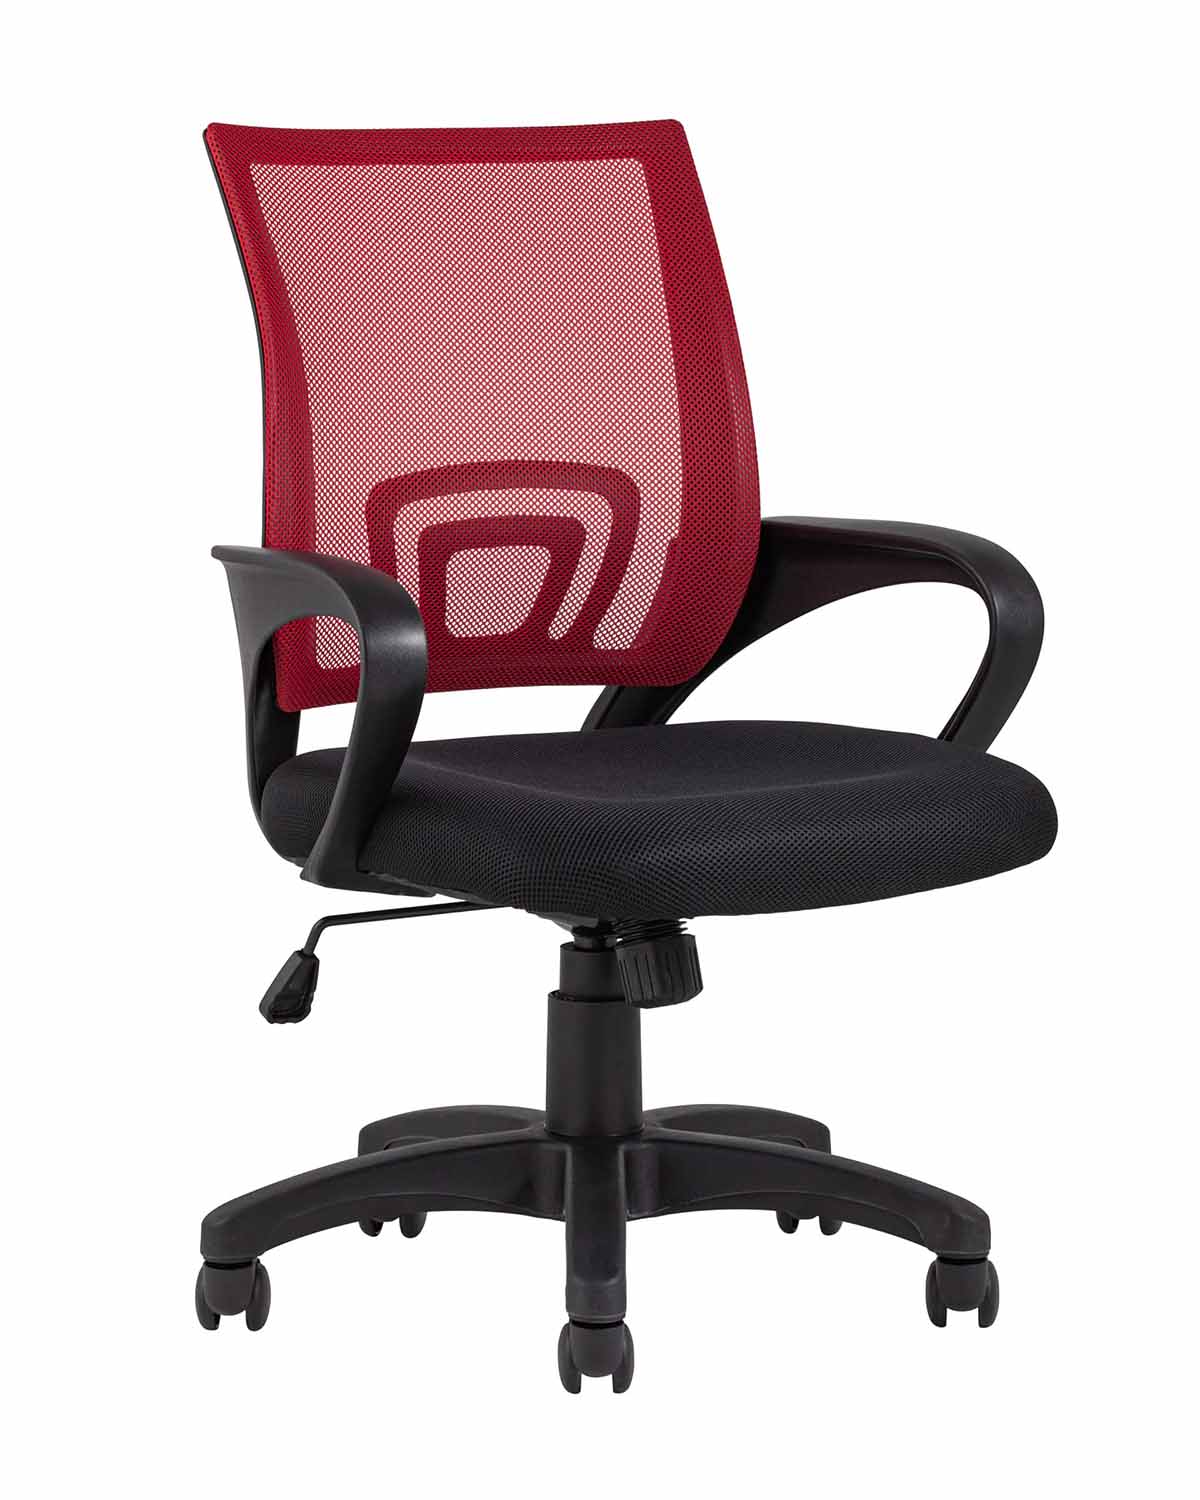 Компьютерное кресло TopChairs Simple офисное красное в обивке из текстиля с сеткой, механизм качания Top Gun